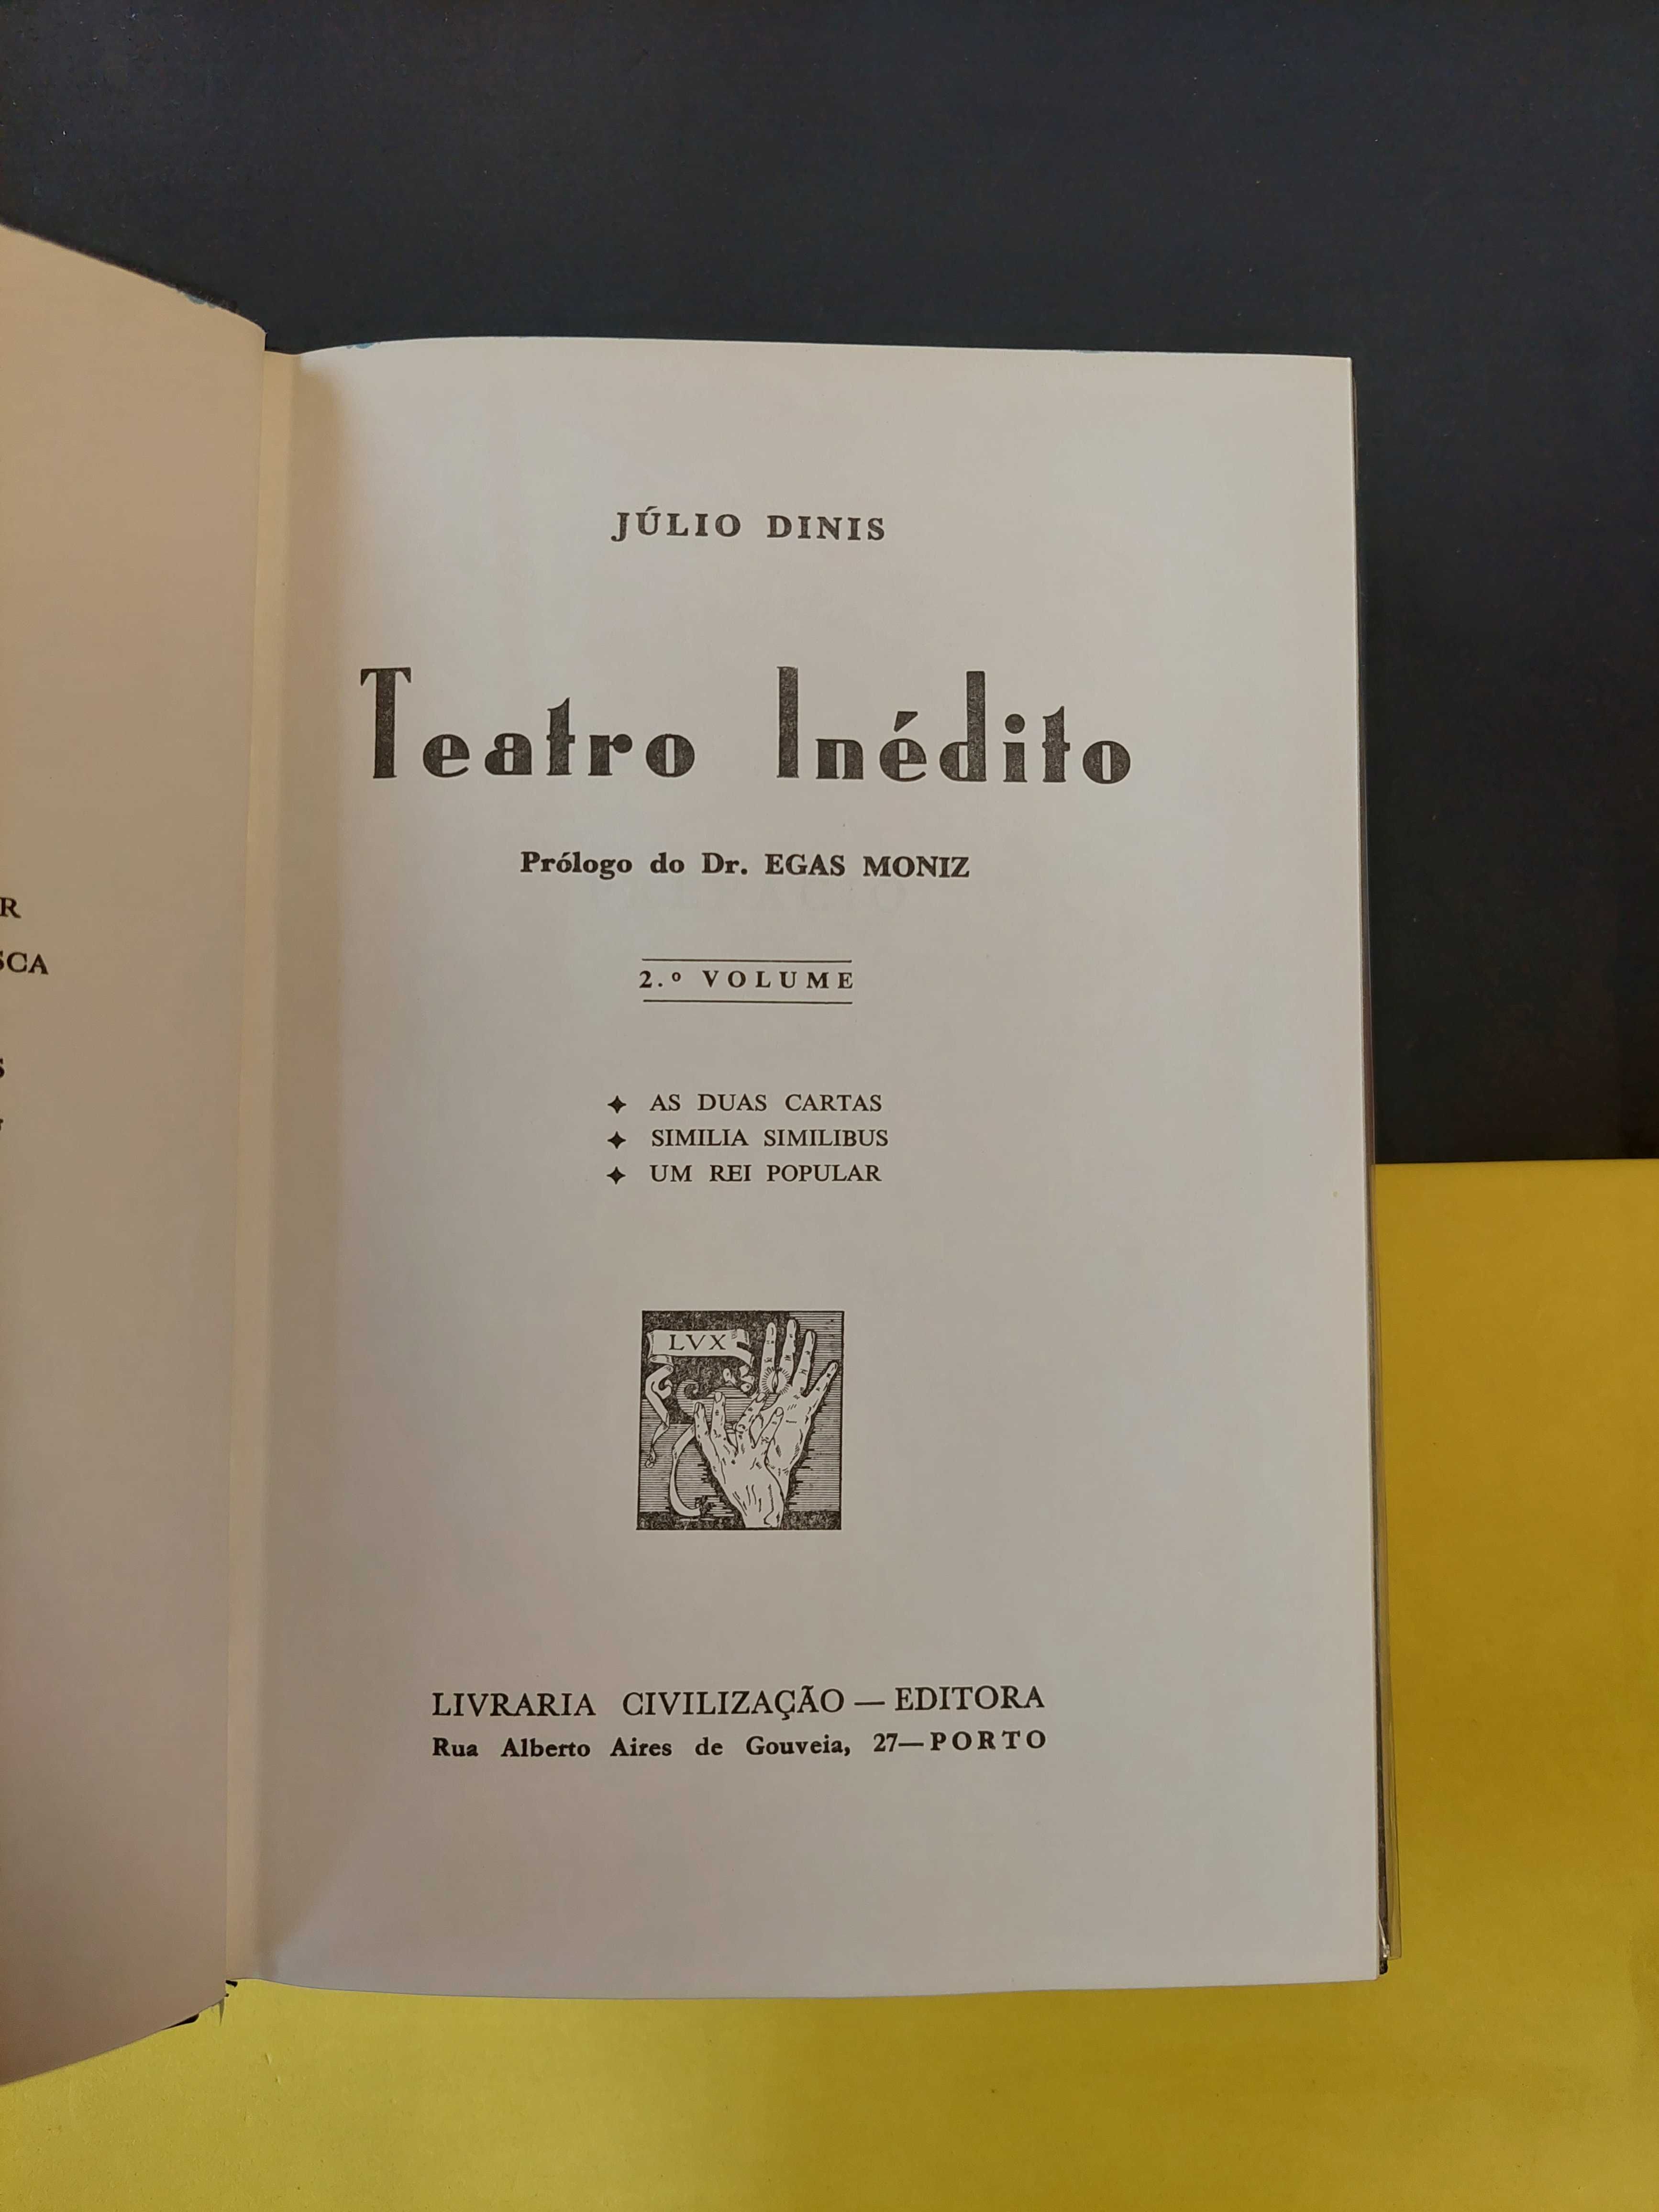 Júlio Dinis - Teatro nédito, 3 volumes